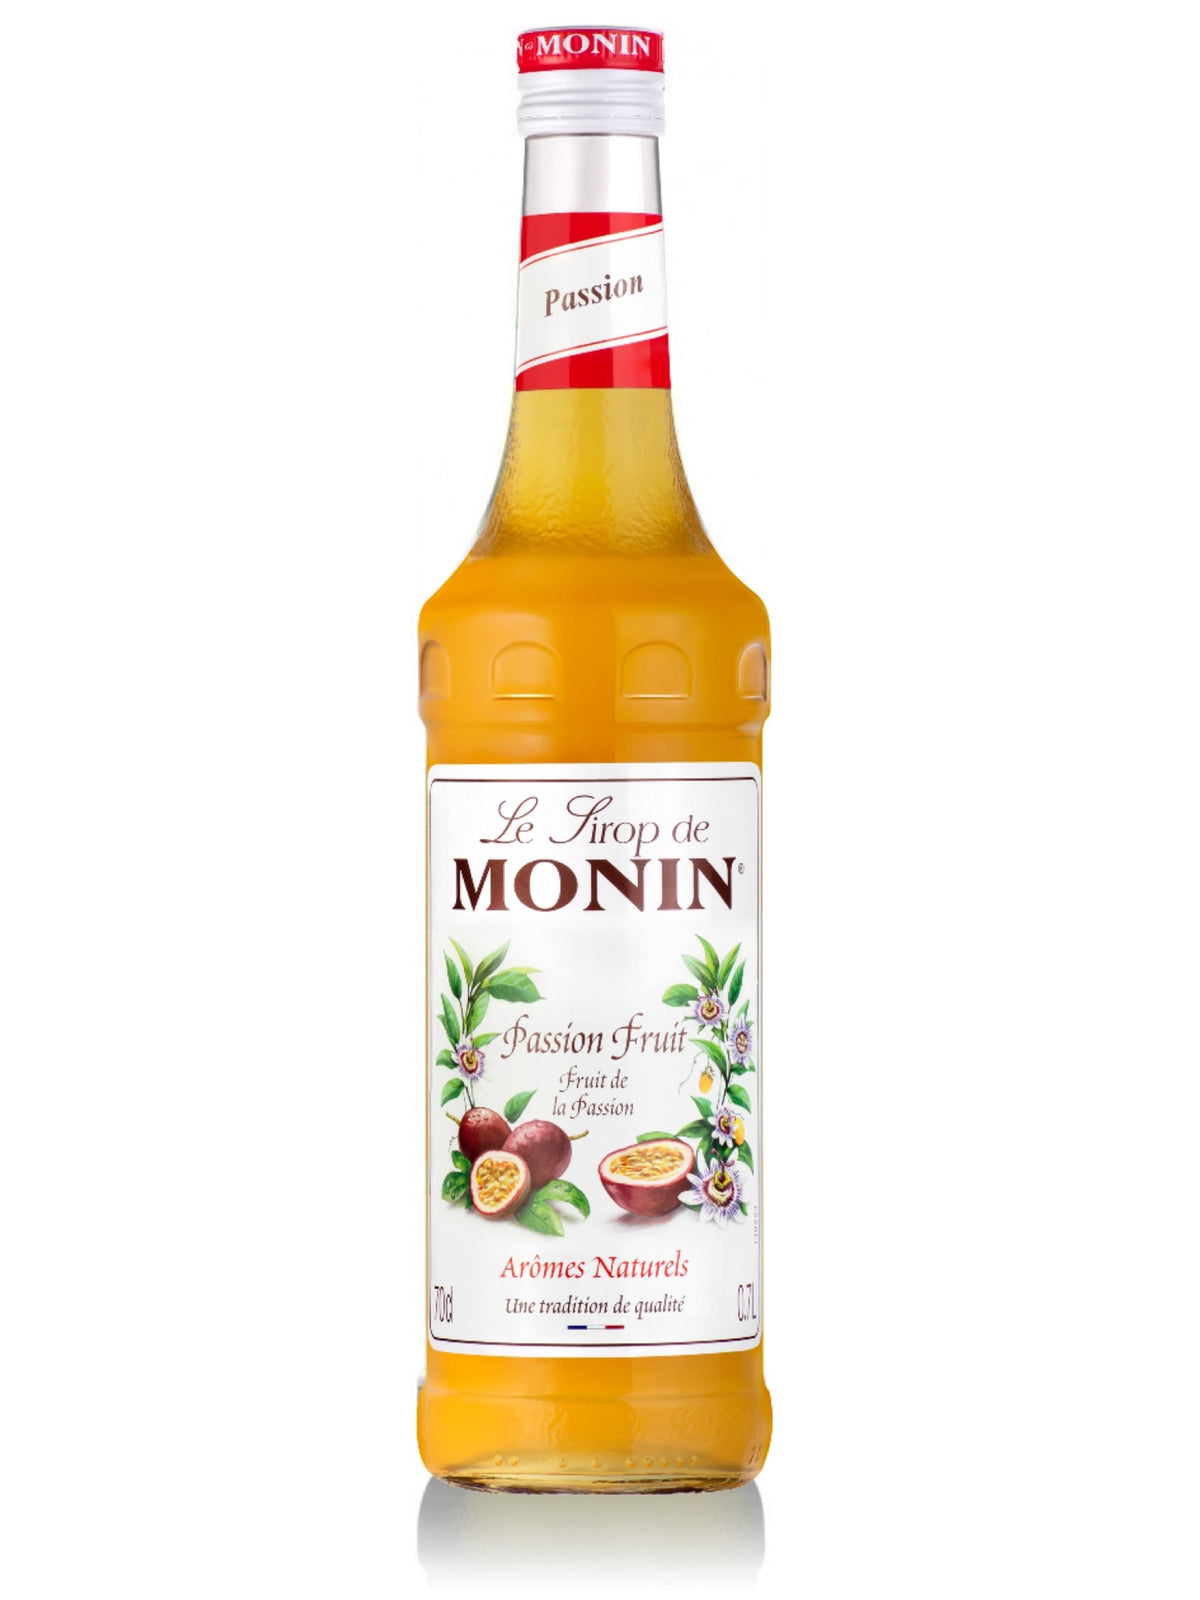 Monin passionsfrugt sirup til din sommer cocktail og mocktail.   Monin Passionsfrucht Sirup